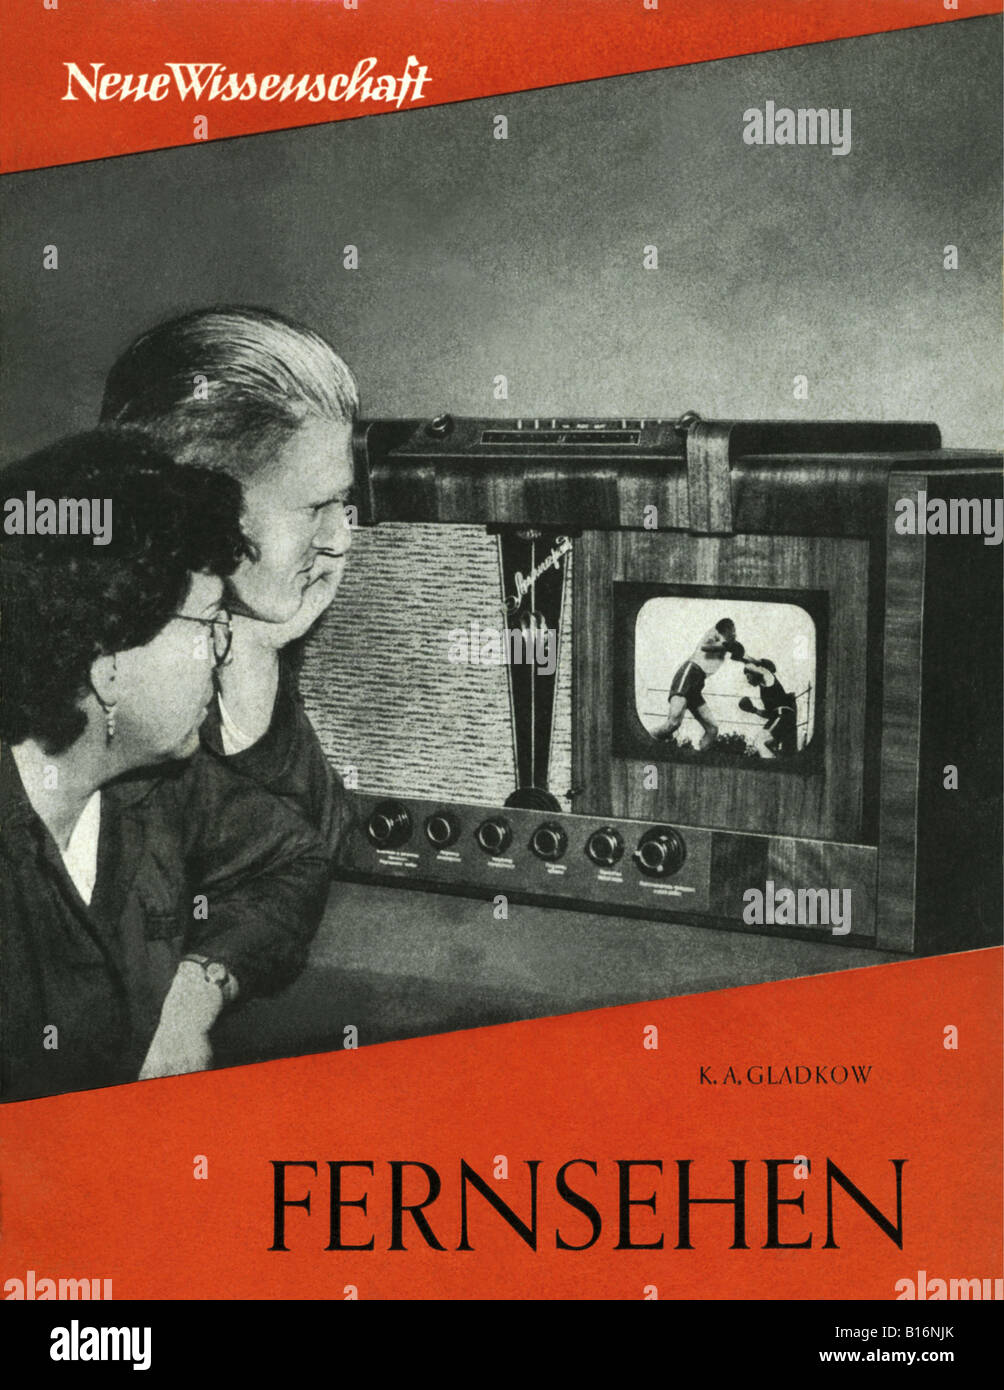 Trasmissione, televisione, pubblicazioni, copertina del libro: 'Fernsehen', Neue Wissenschaft di K. A. Gladkow, GDR, 1954, Foto Stock